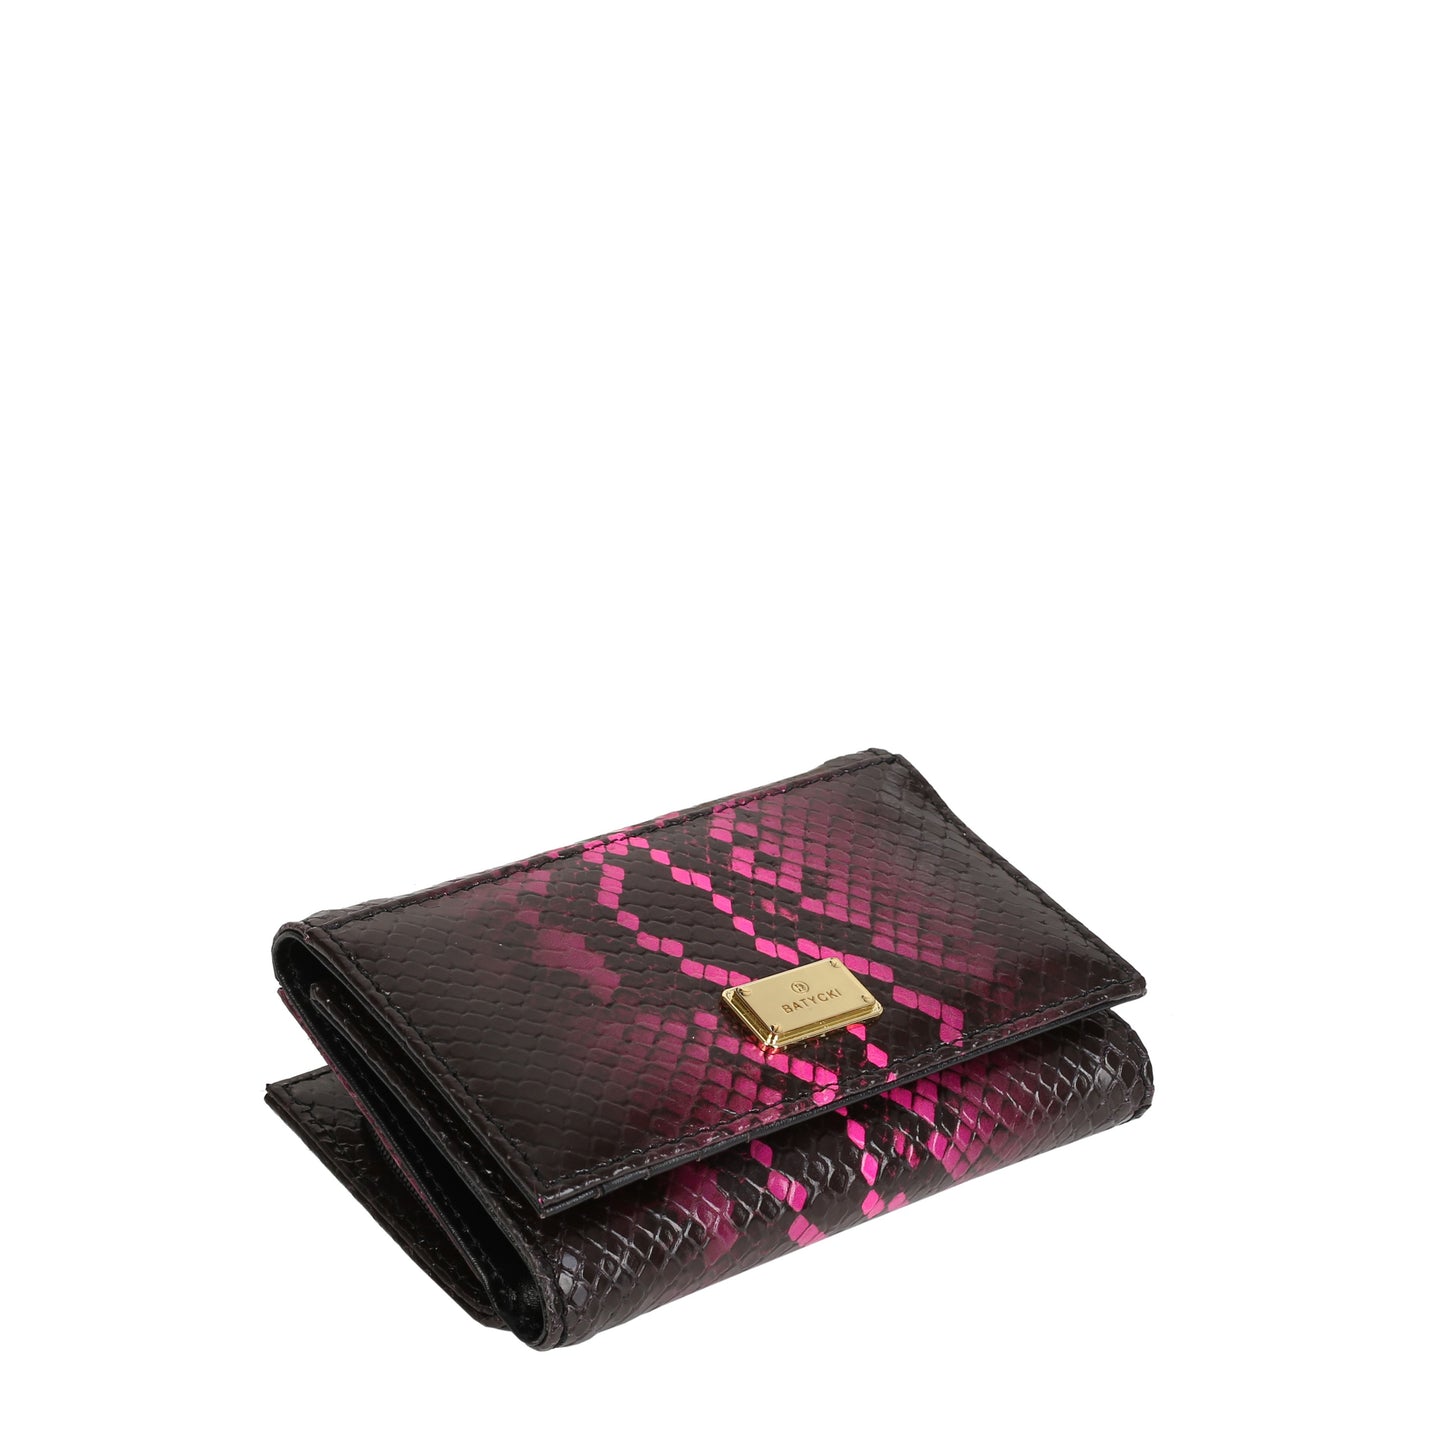 CASPER BLACK women's leather wallet